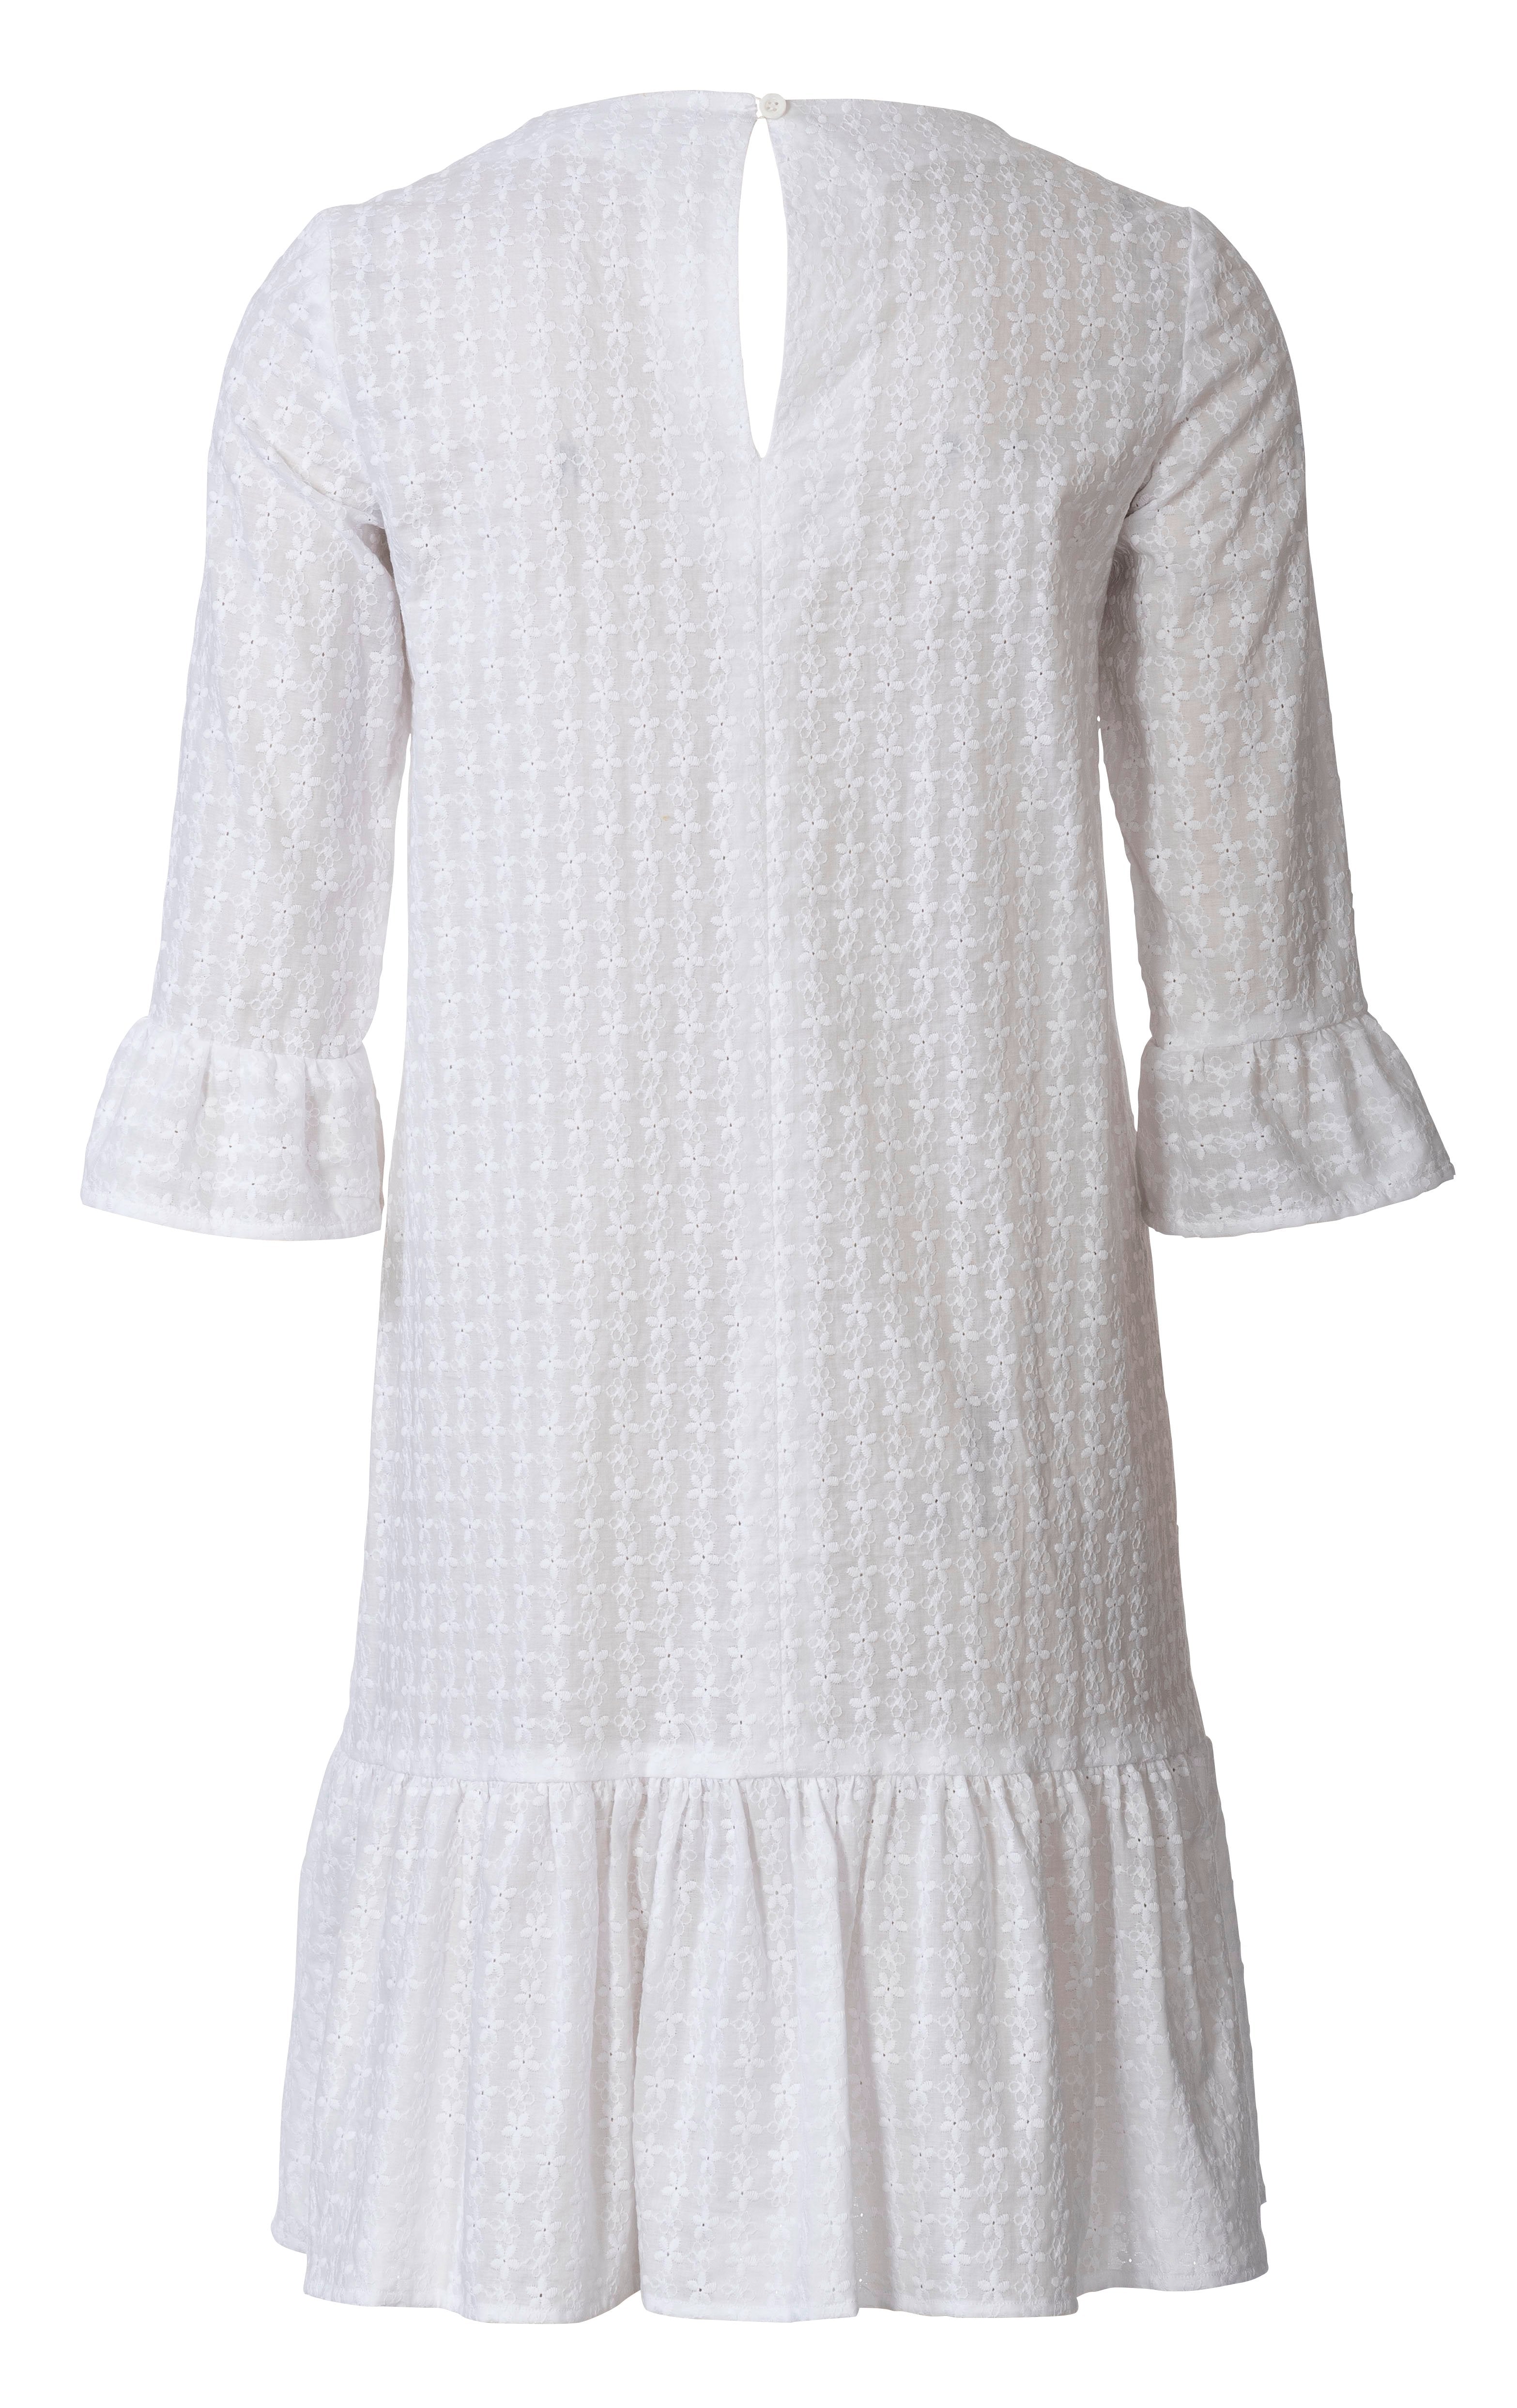 Burda Pattern 6208  Dress – Casual Fit – 
Hem Frills from Jaycotts Sewing Supplies